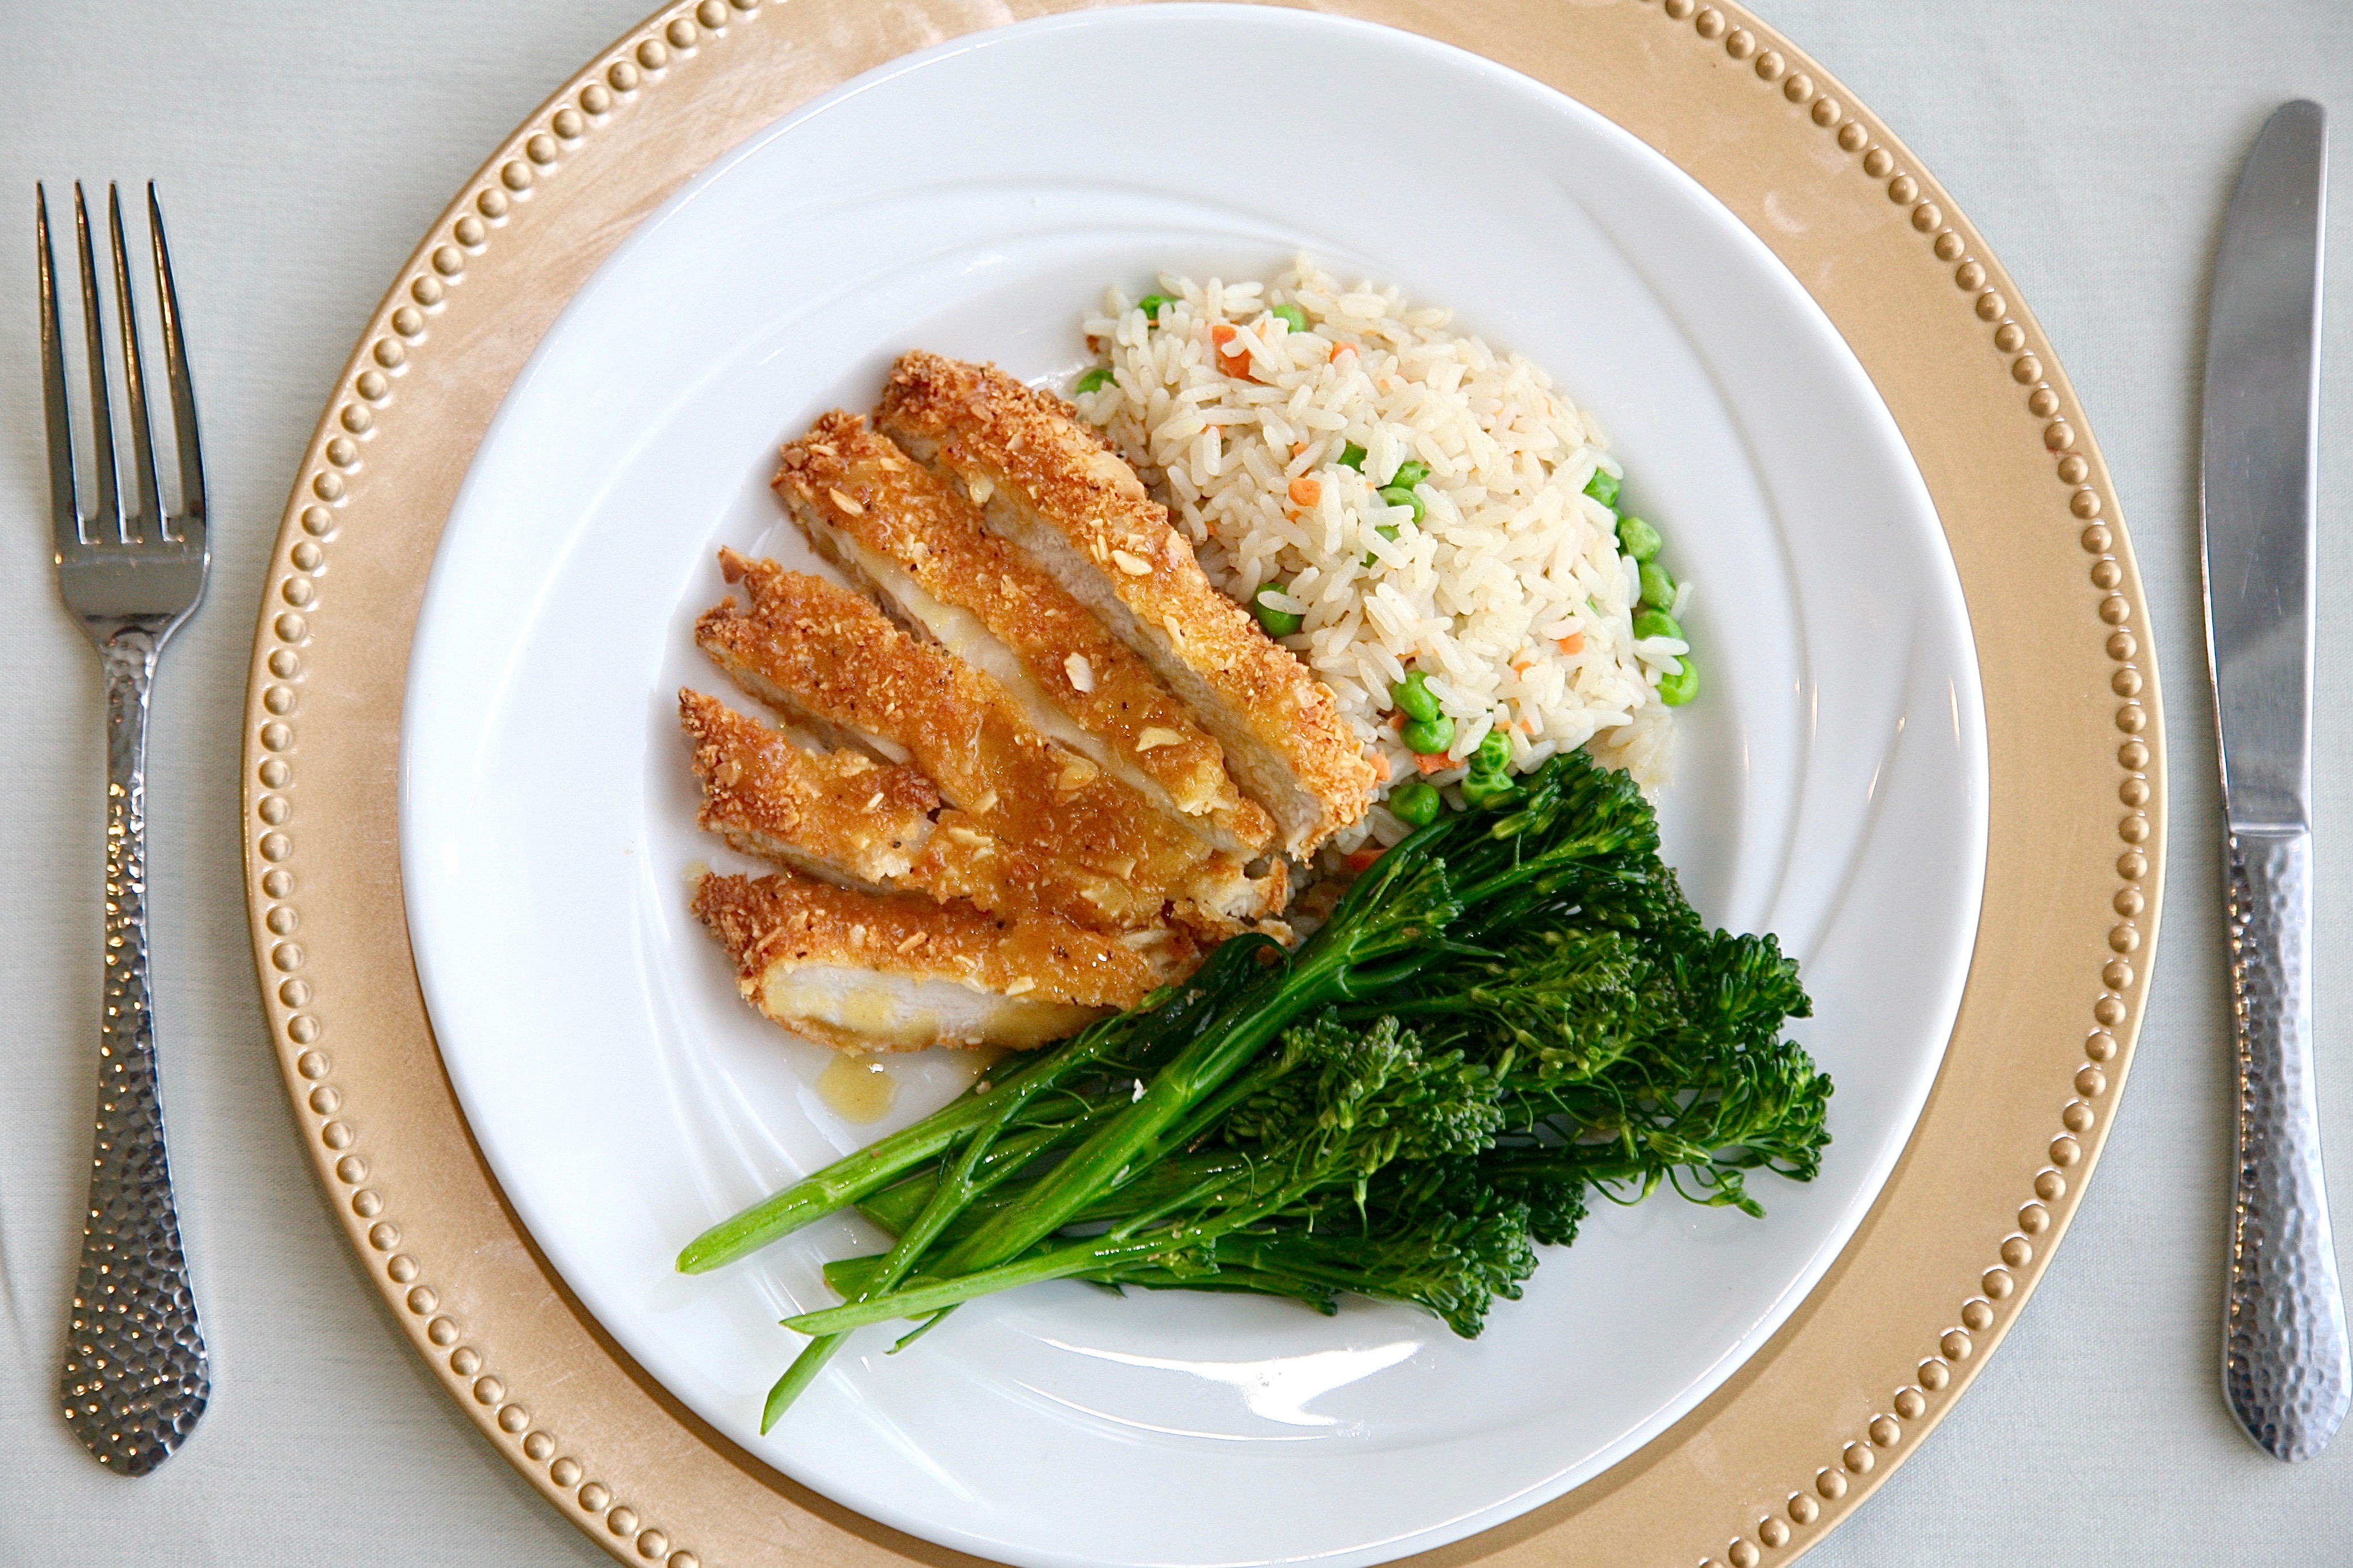 orlando catering - Crispy chicken, rice, and broccolini